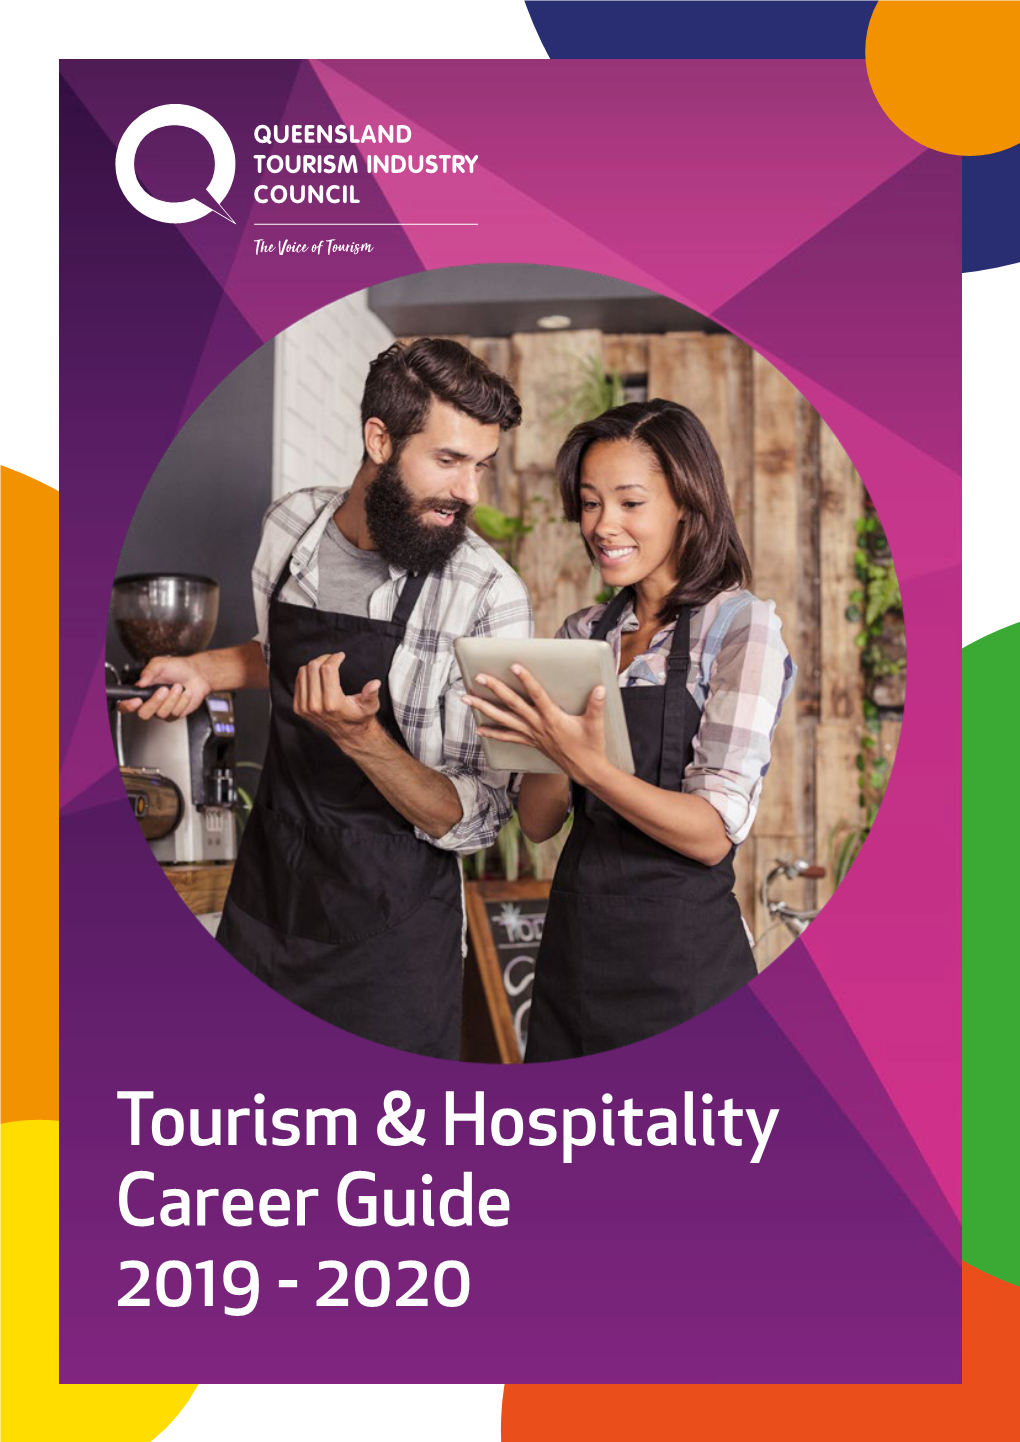 Tourism & Hospitality Career Guide 2019